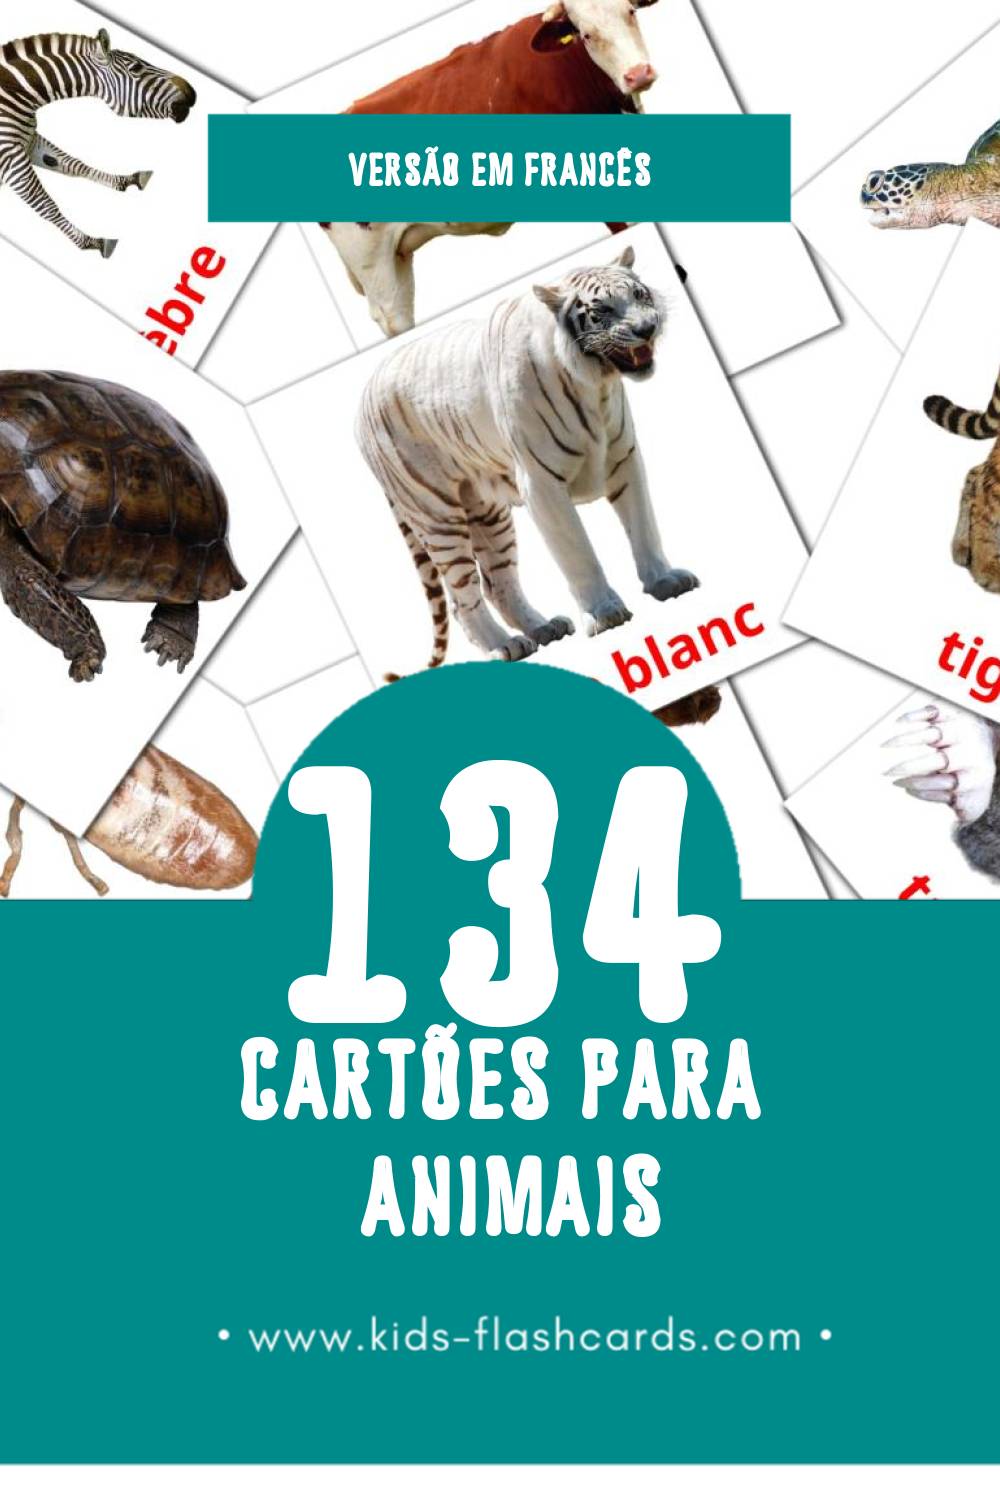 Flashcards de Animaux Visuais para Toddlers (134 cartões em Francês)